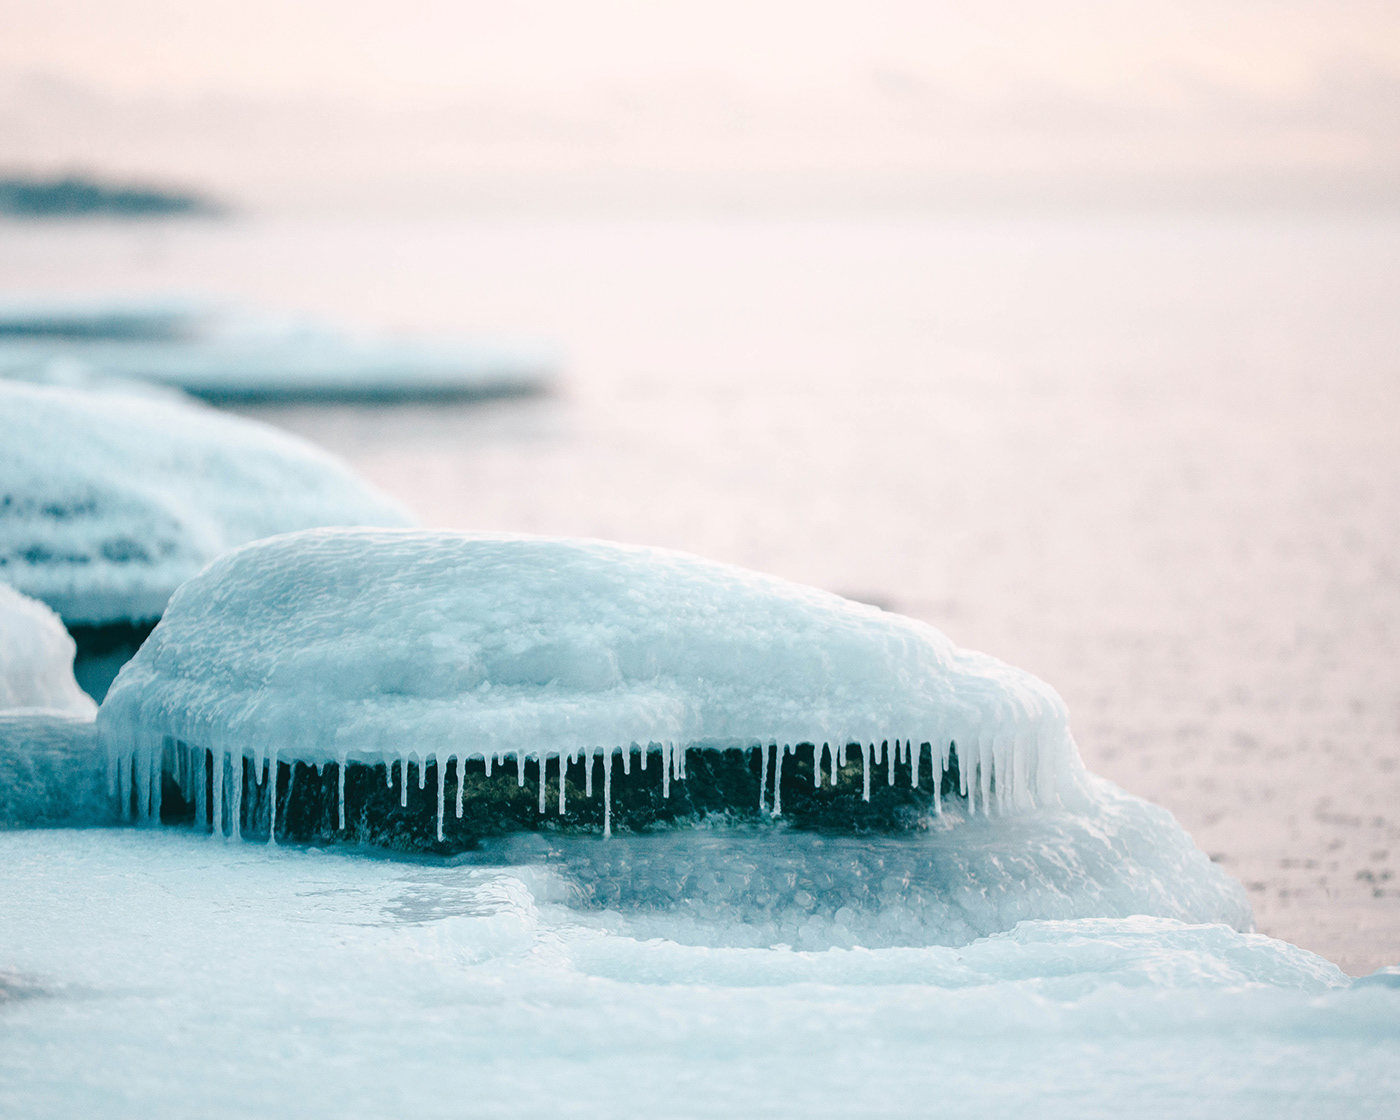 baltic sea finland helsinki ice lauttasaari Presetr sea winter